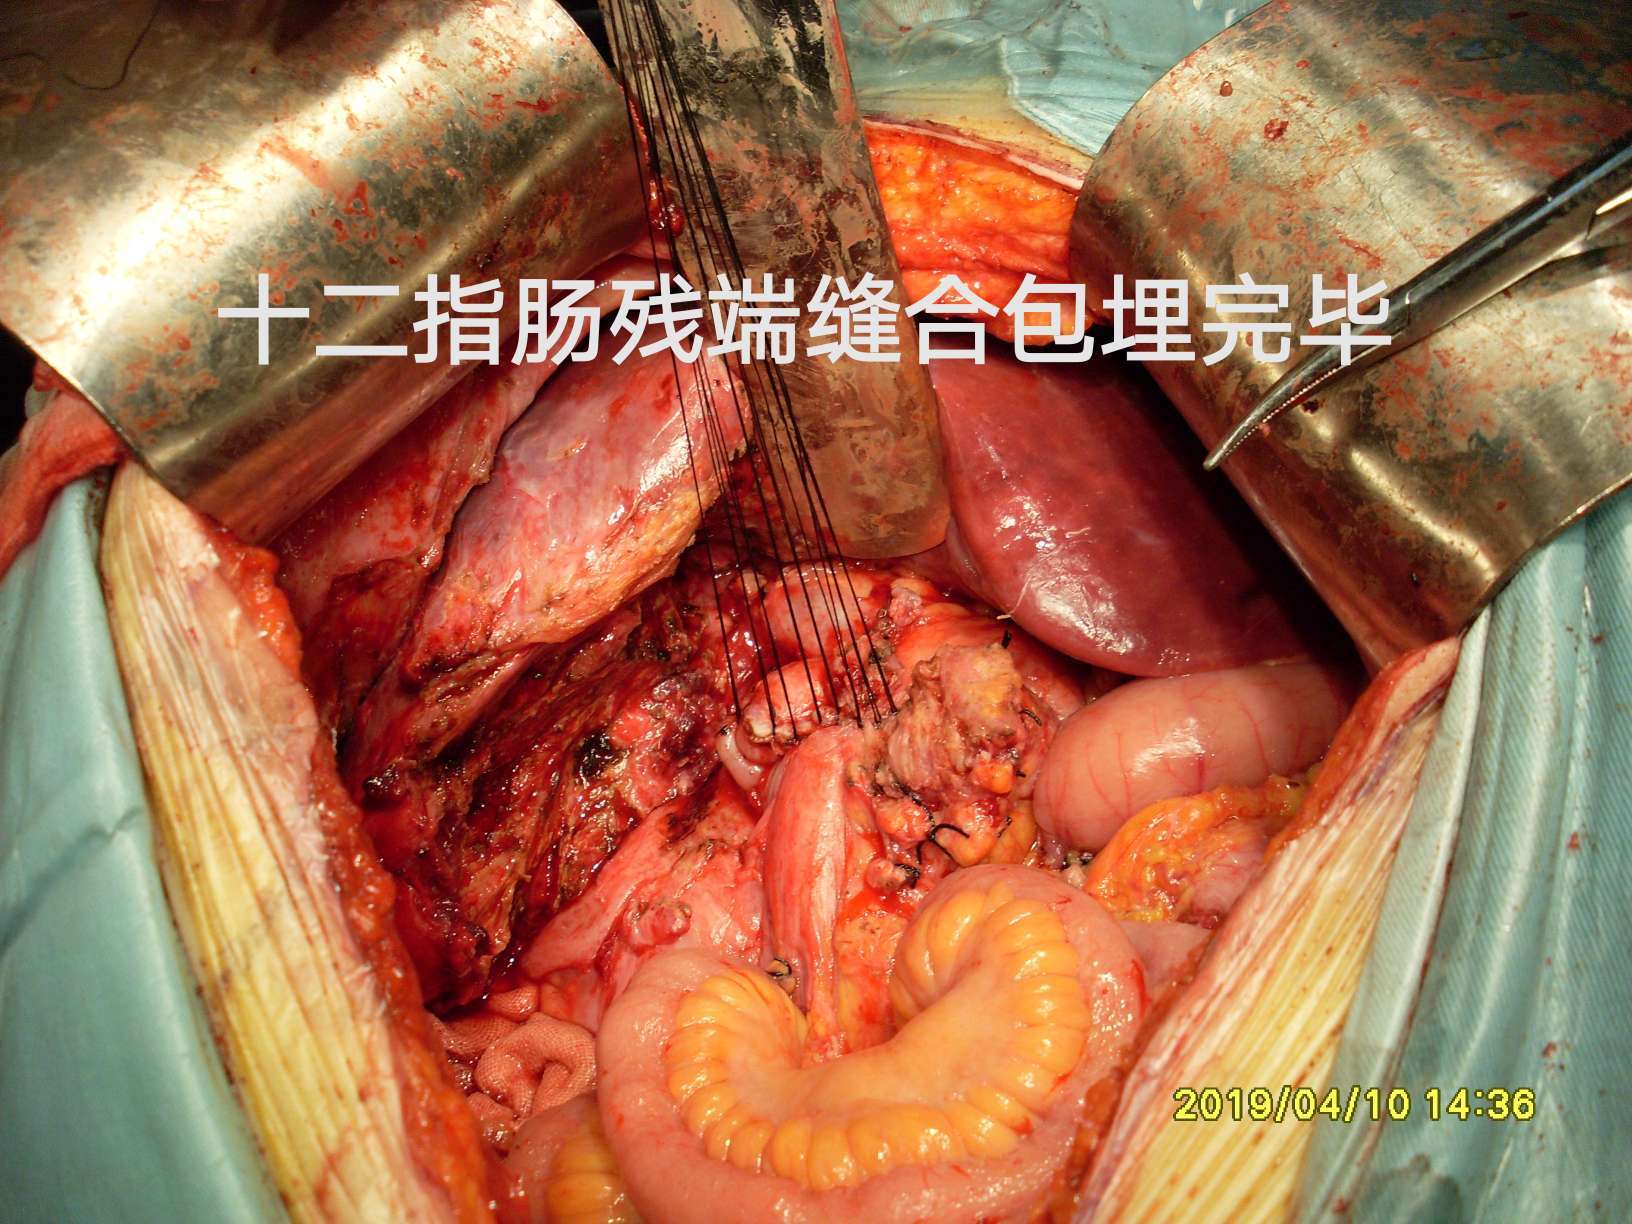 病例(40)--结肠肝曲粘液腺癌突破肠管向外生长! (原创